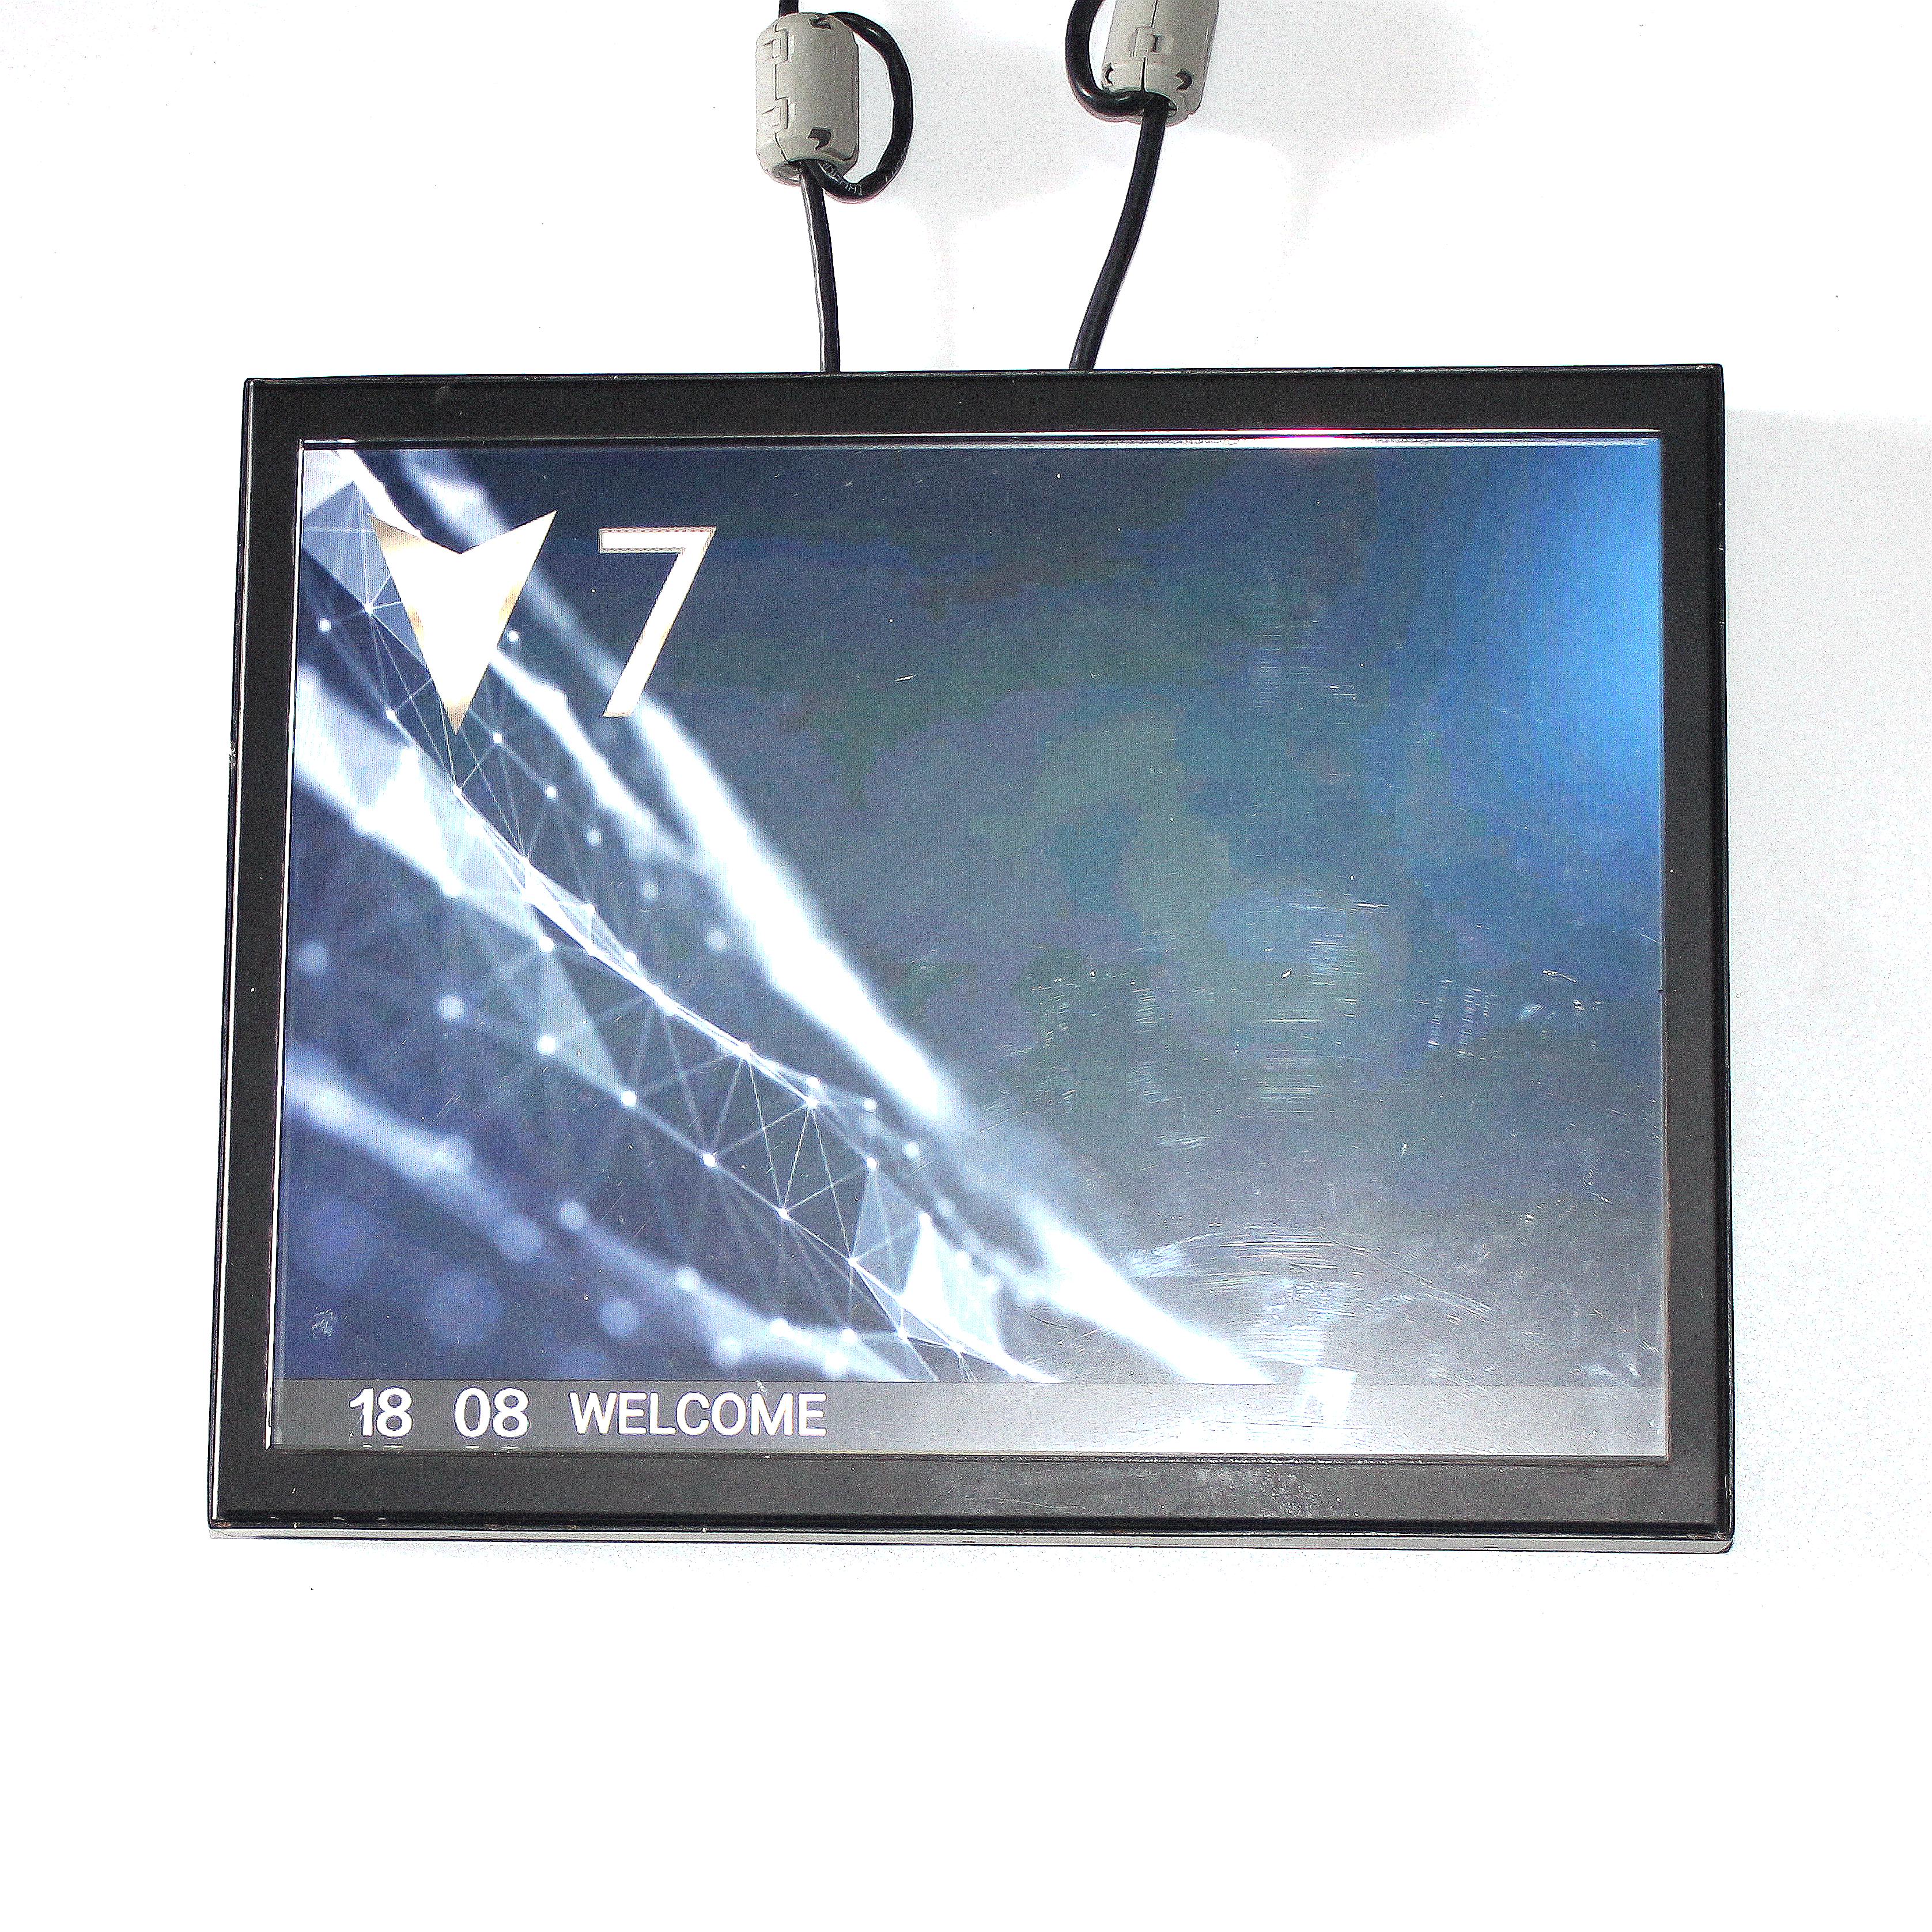 ZCPD-N801/N701/N401/C401多媒体视频机轿内液晶显示ZPIH-C401